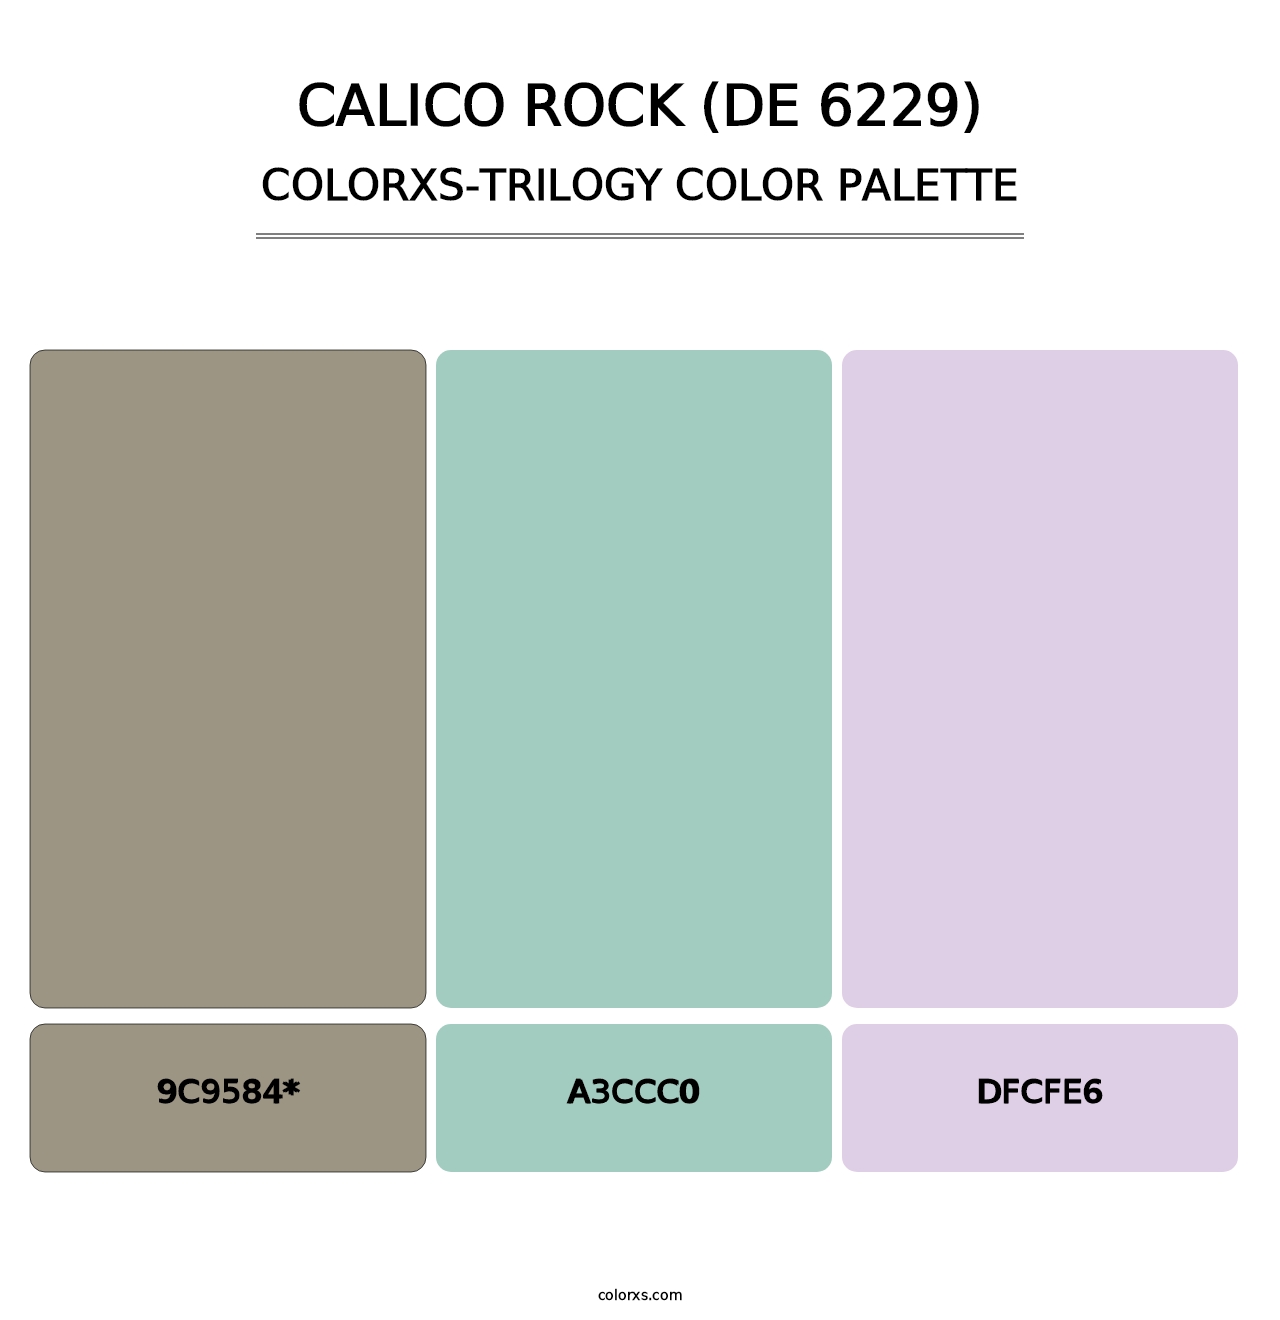 Calico Rock (DE 6229) - Colorxs Trilogy Palette